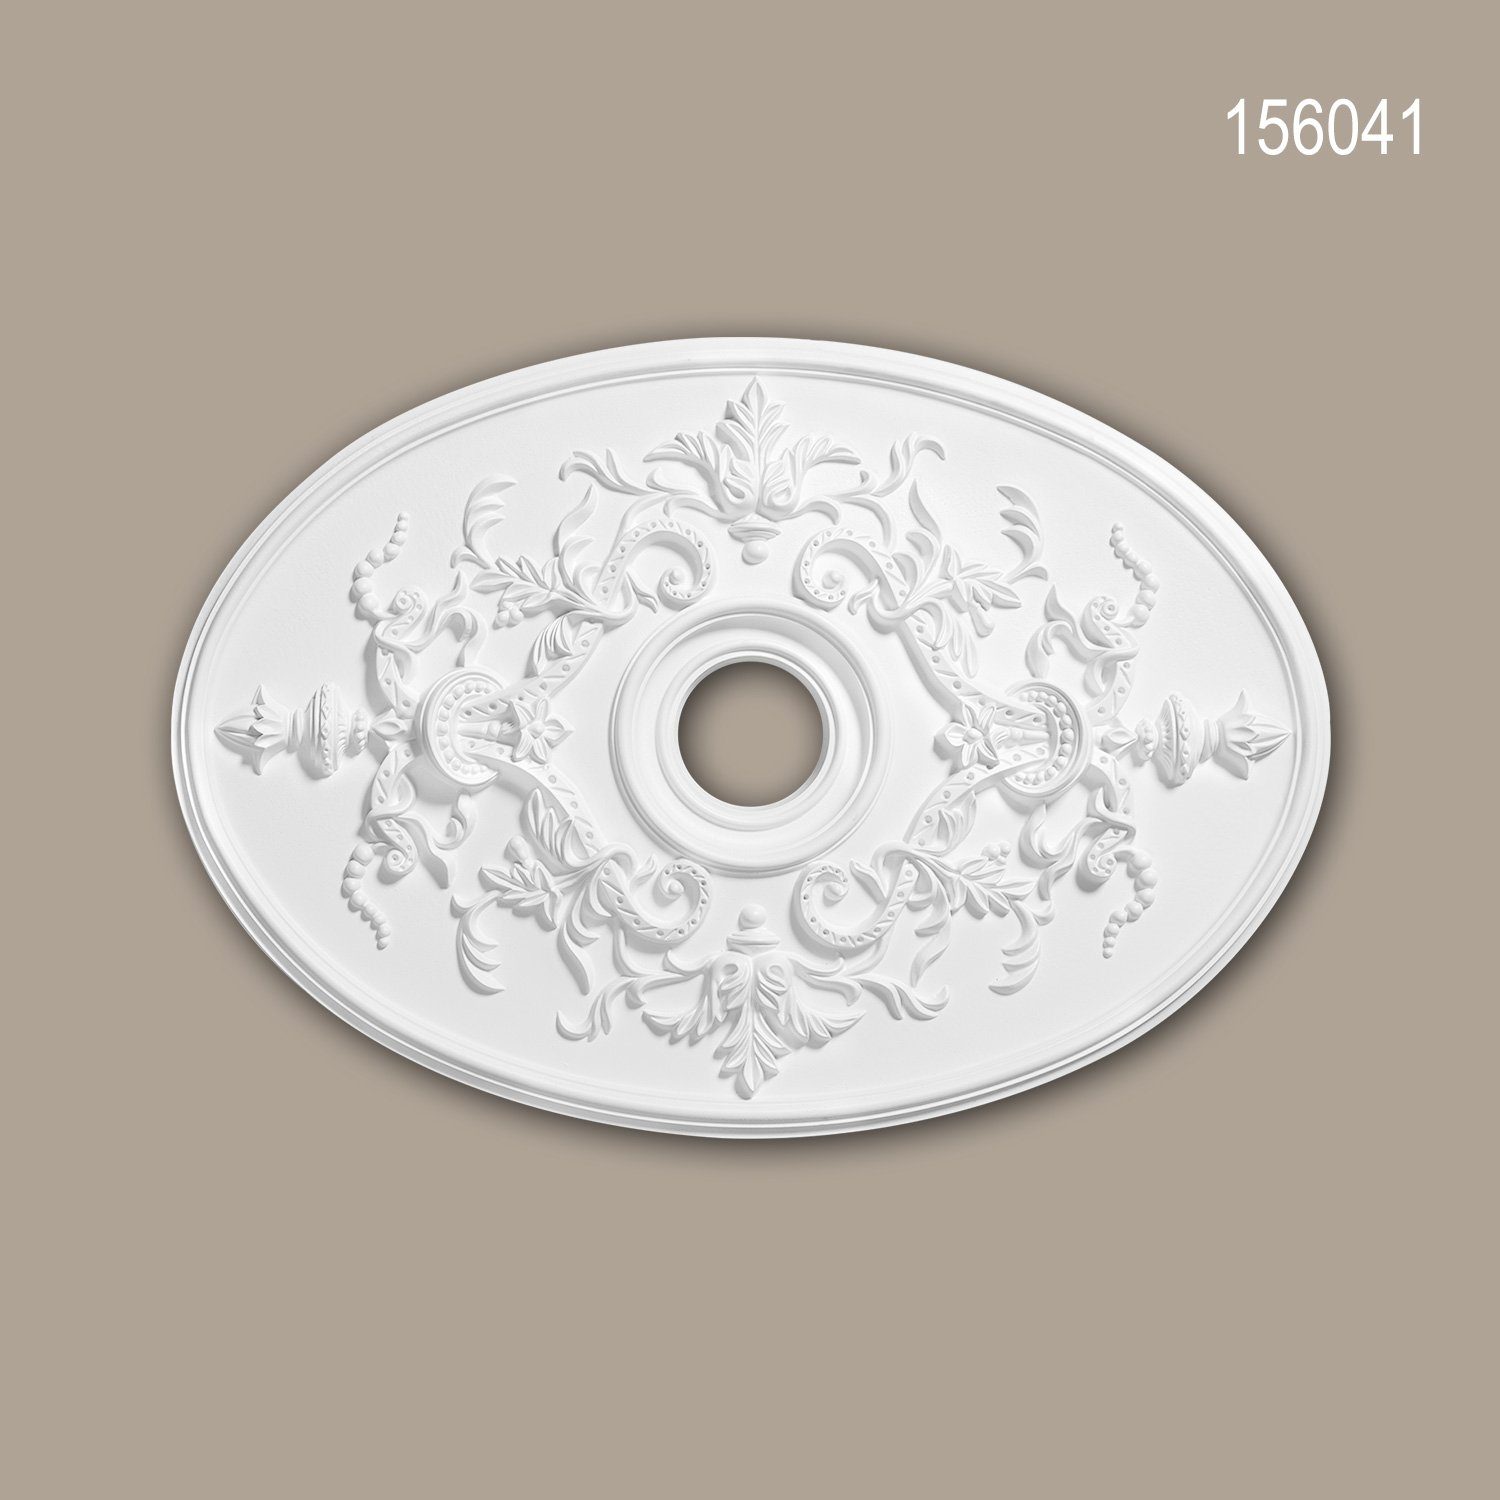 x Deckenrosette, 156041 Neo-Empire Zierelement, Stuckrosette, 1 Stil: weiß, 54,4 Deckenelement, Medallion, (Rosette, Profhome 78,5 cm), St., vorgrundiert, Decken-Rosette